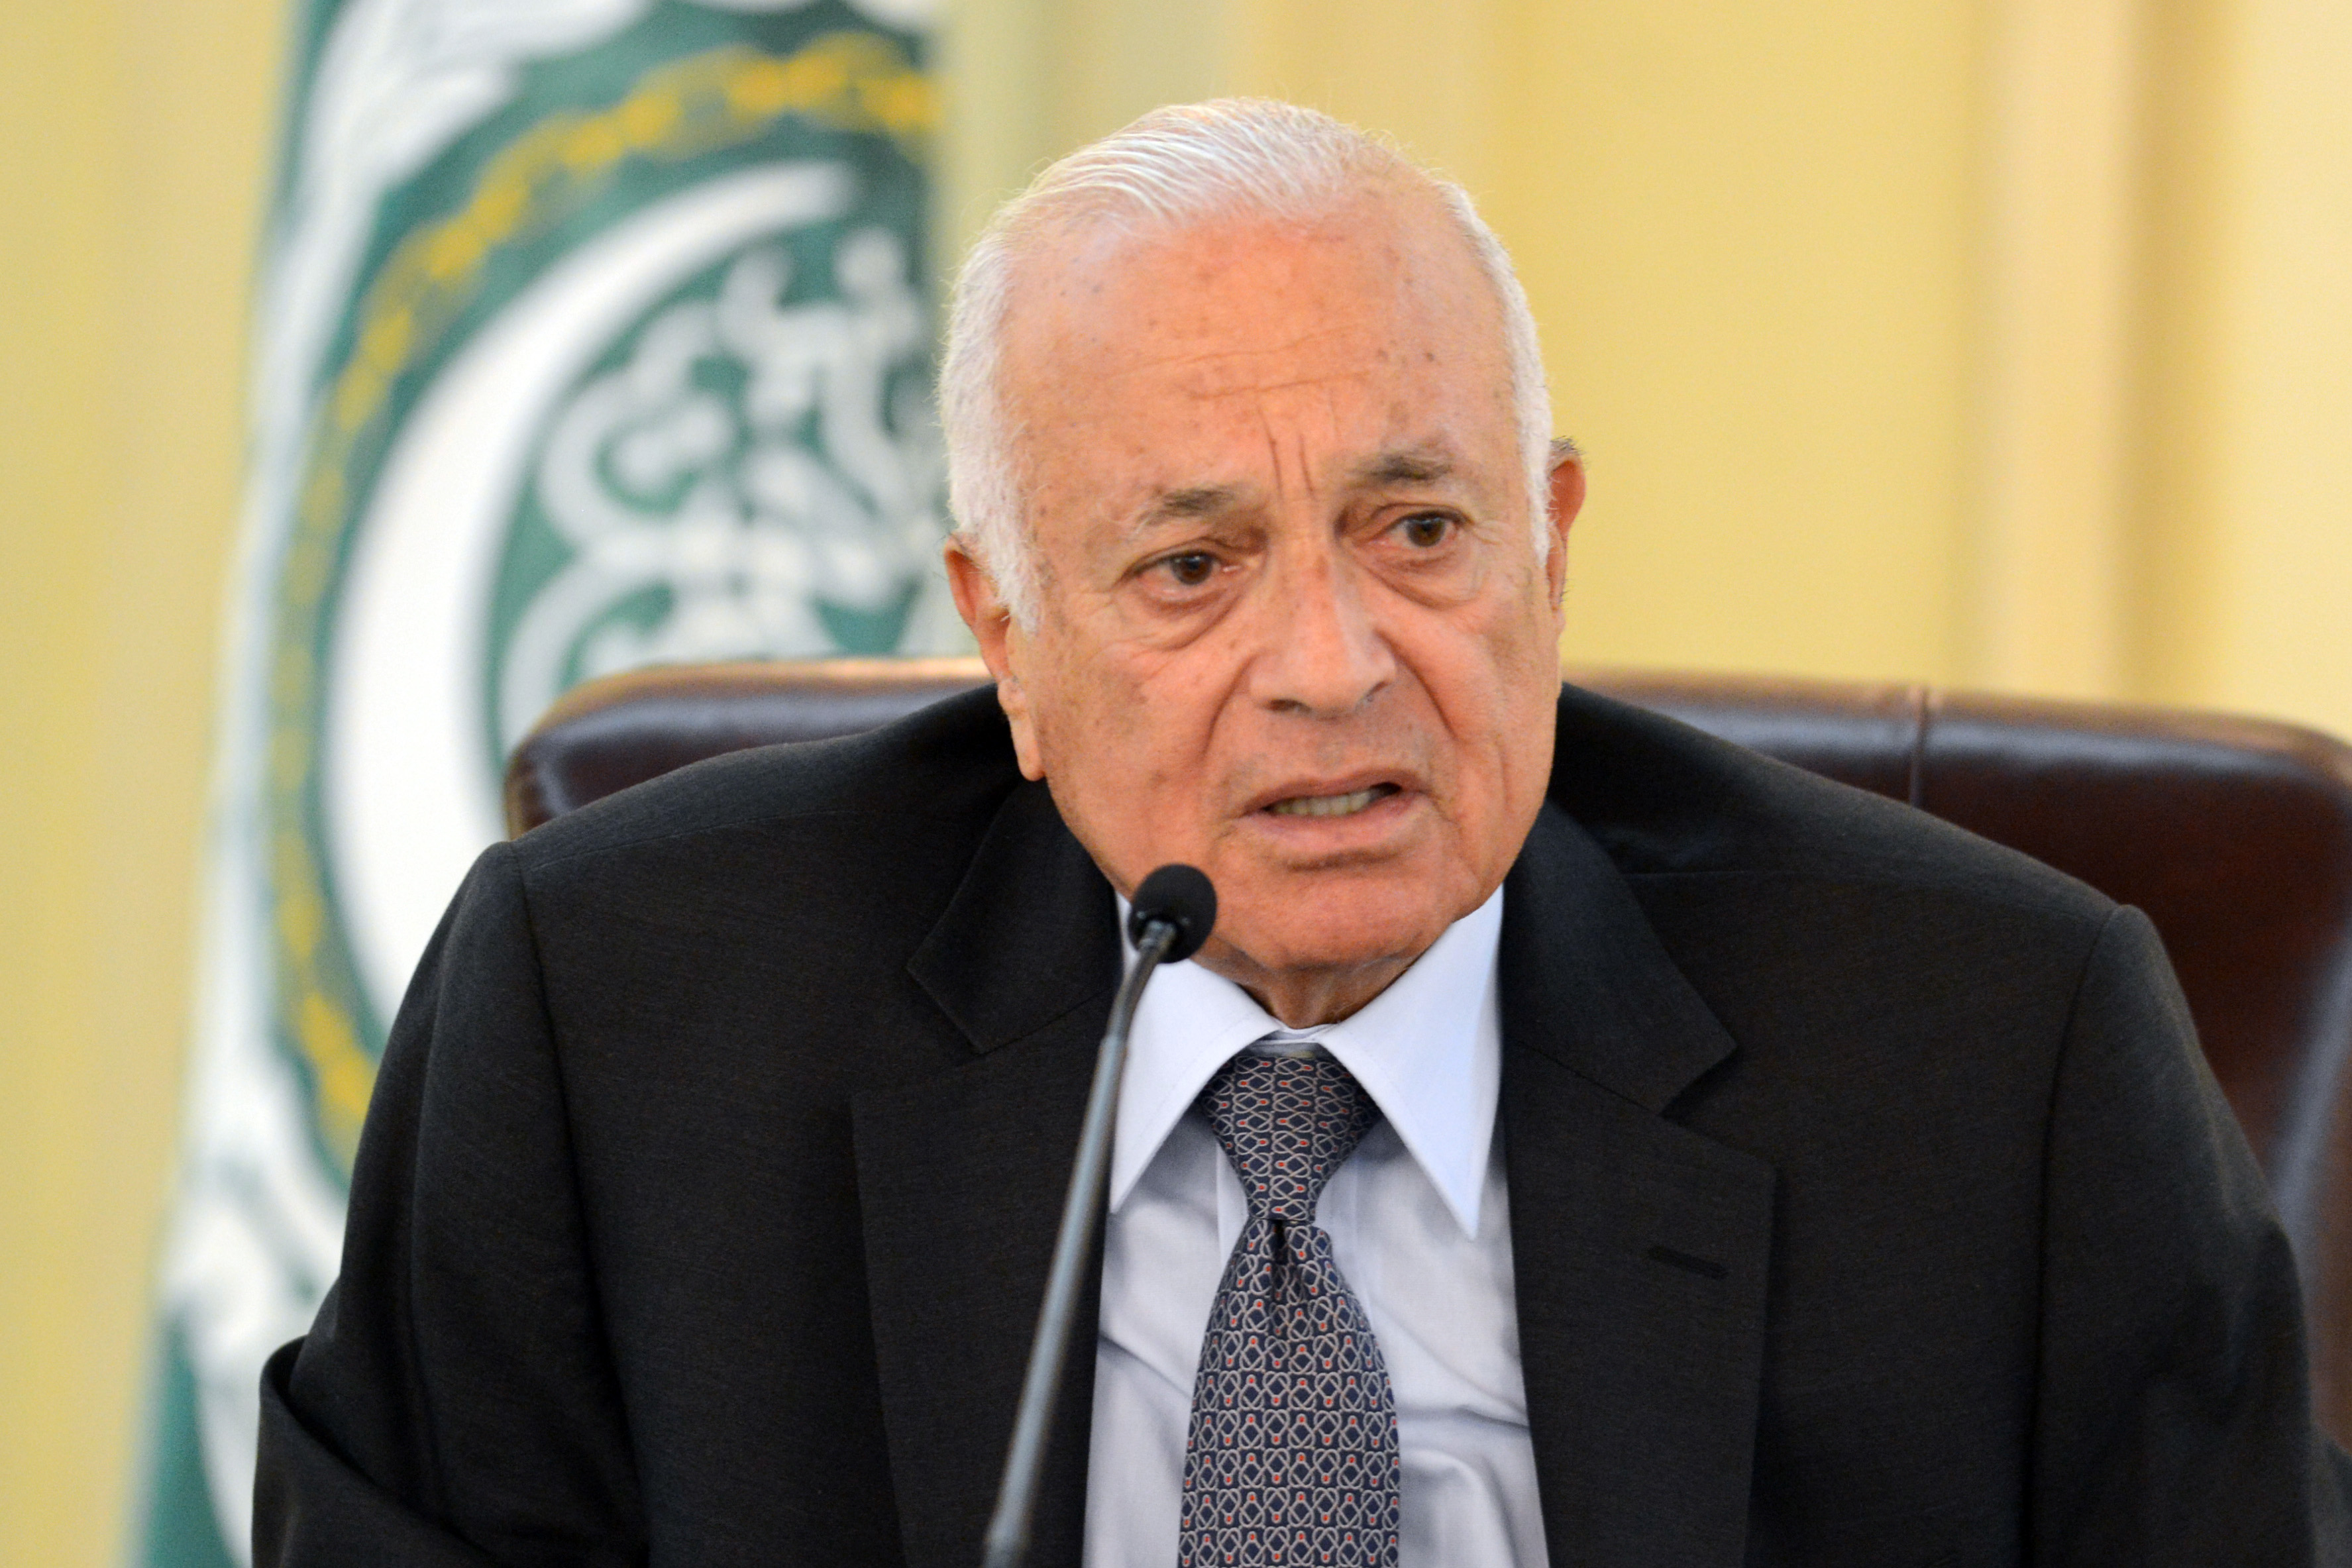 الأمين العام لجامعة الدول العربية نبيل العربي